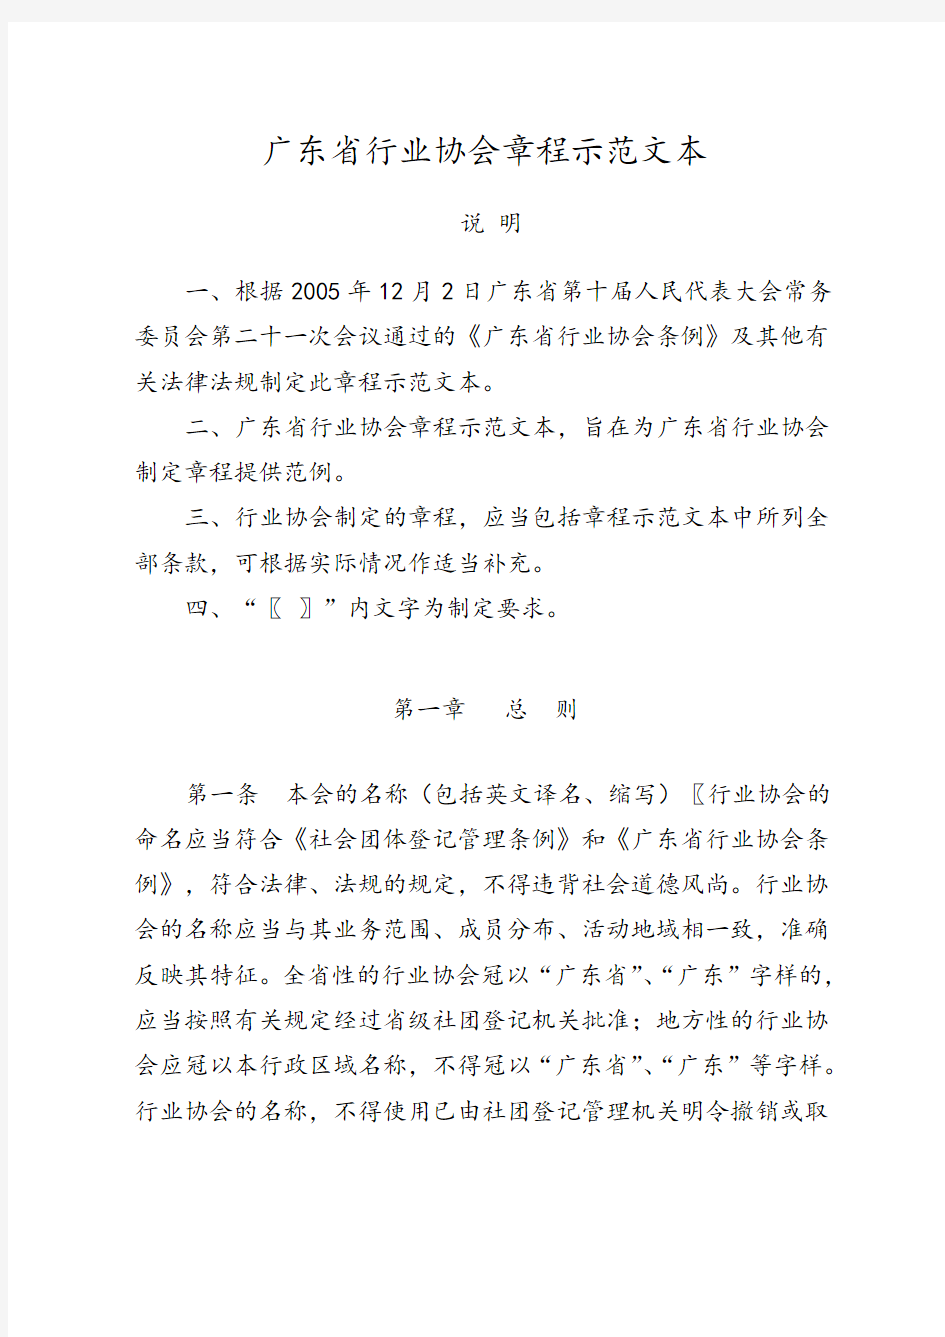 关于印发《广东省行业协会章程示范文本》的通知